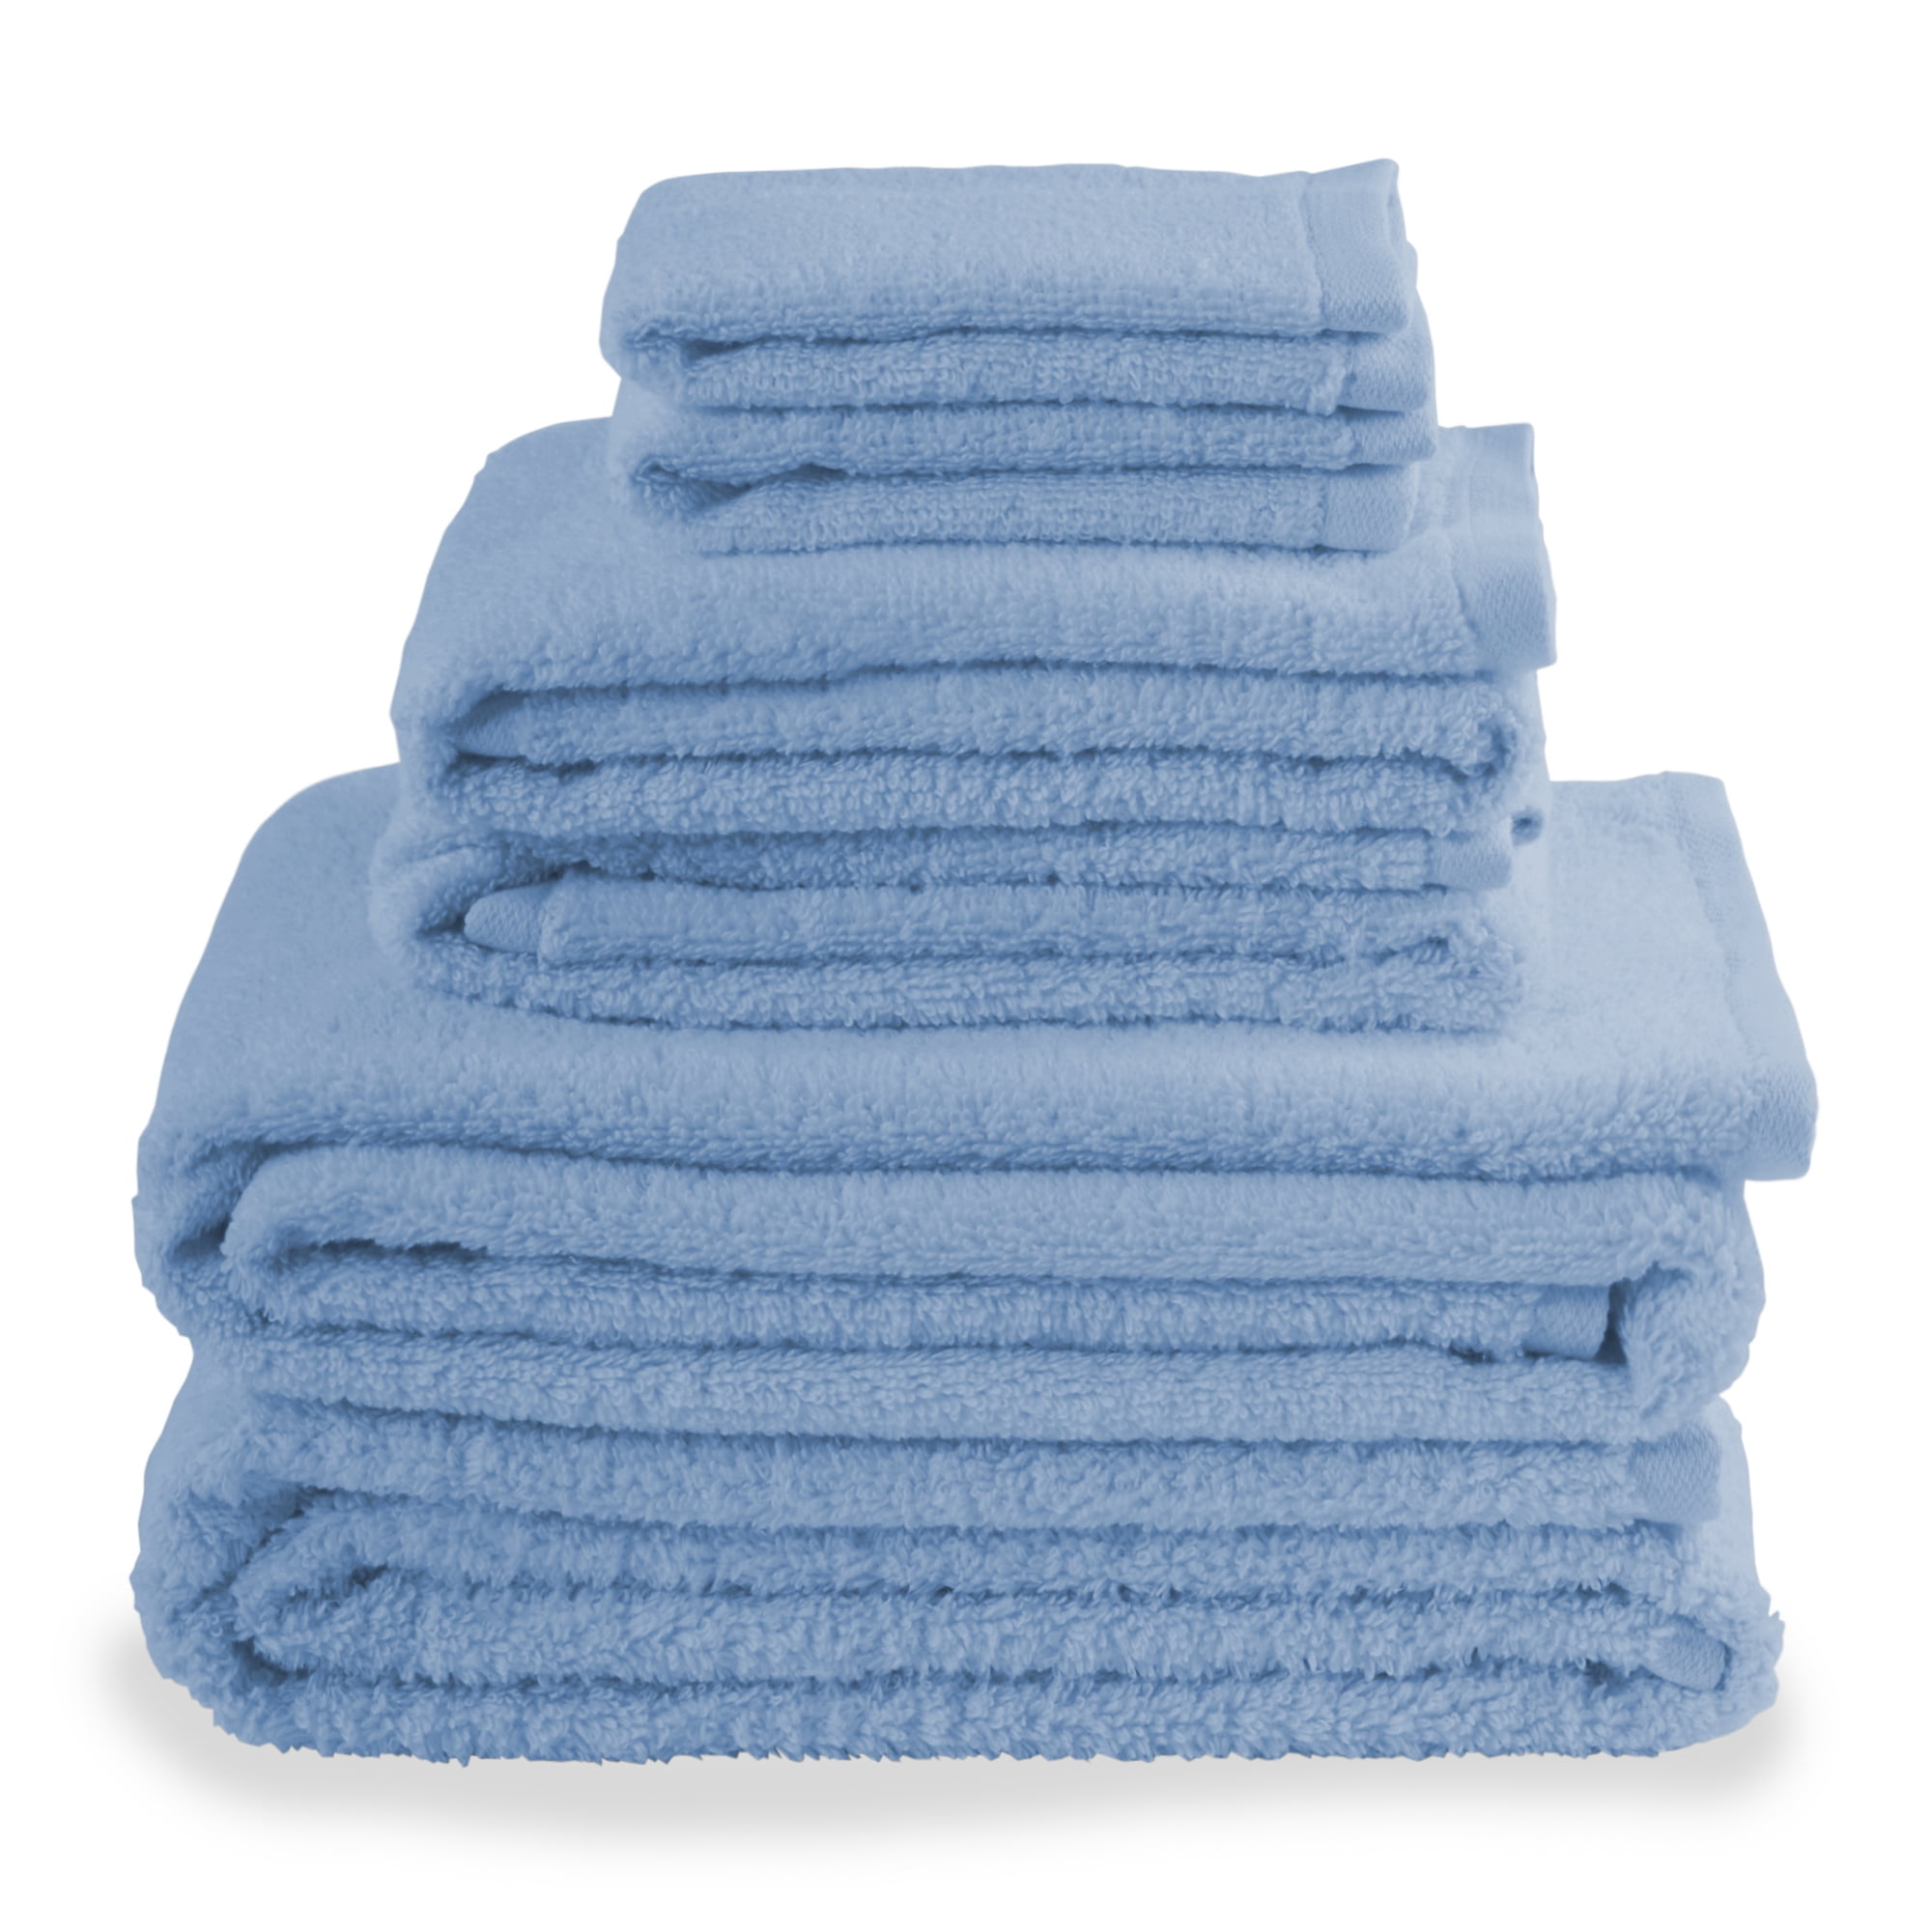 10 PCS TOWEL BALE SET 100% COMBED COTTON SOFT FACE HAND BATH BATHROOM TOWELS